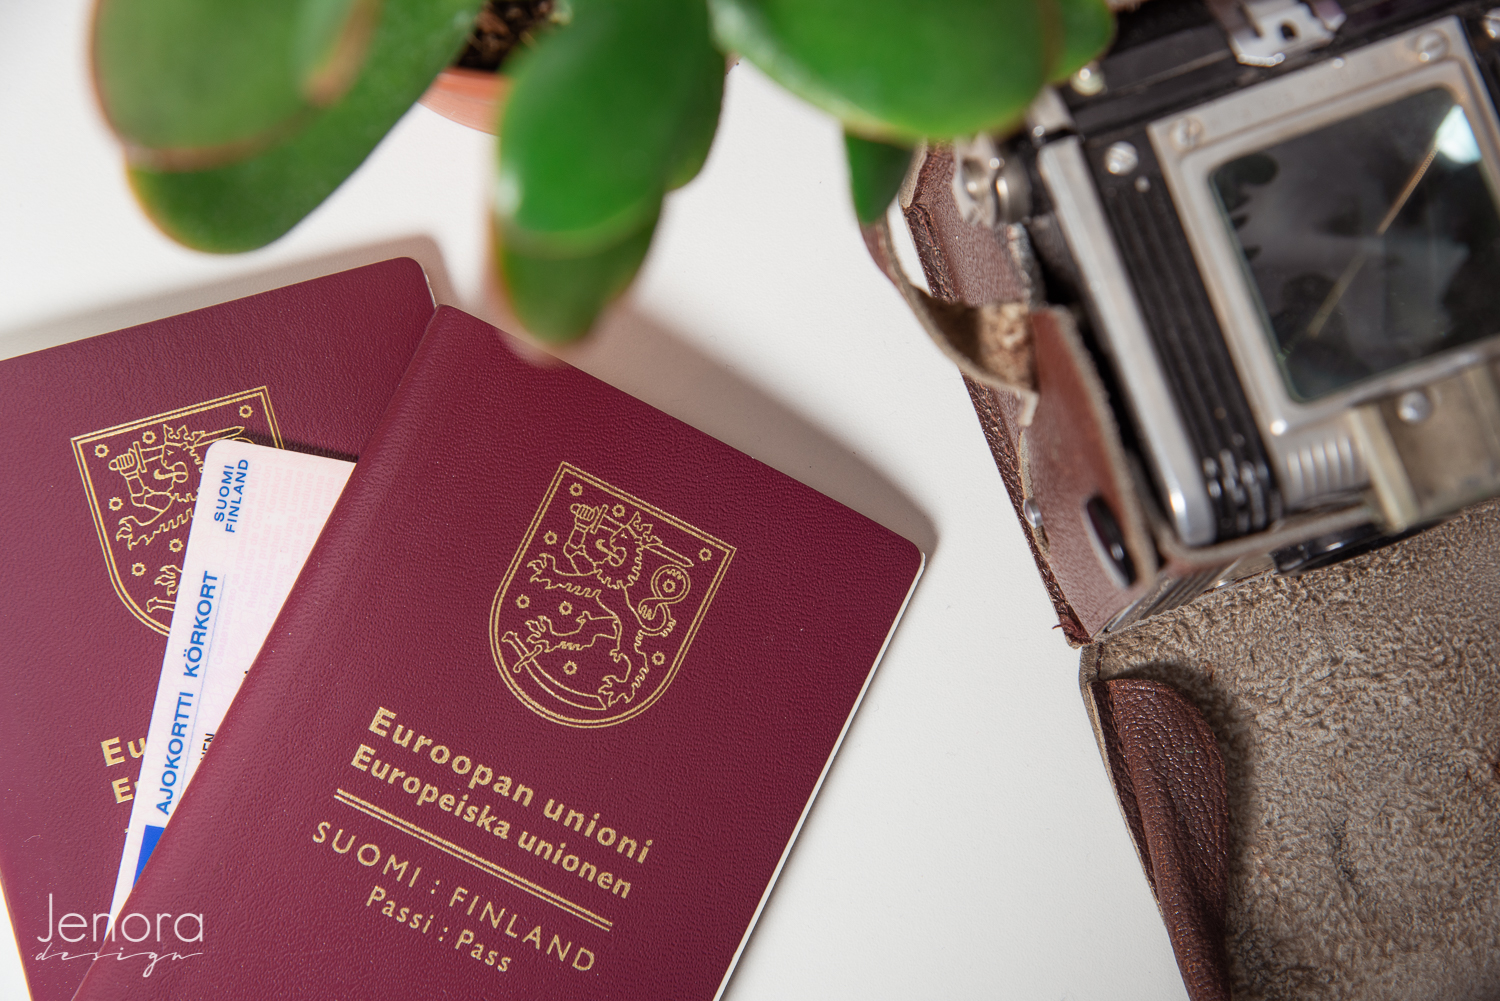 Passikuvat valokuvaamo Jenora Design Laukaa, passi ja ajokortti pöydällä